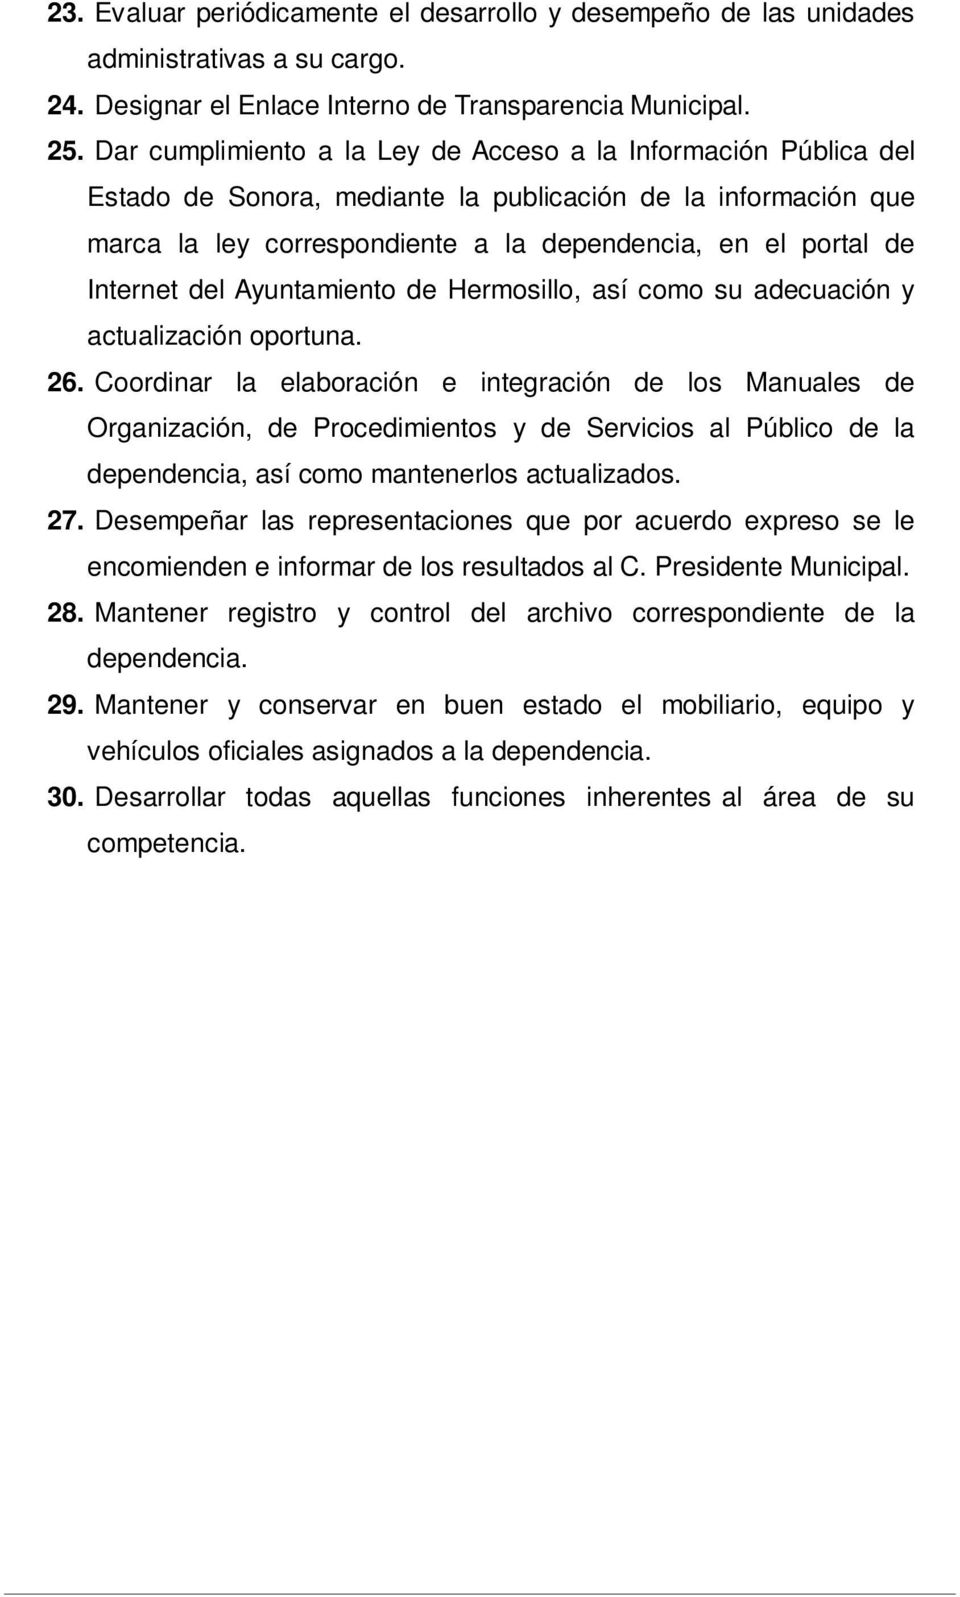 Internet del Ayuntamiento de Hermosillo, así como su adecuación y actualización oportuna. 26.